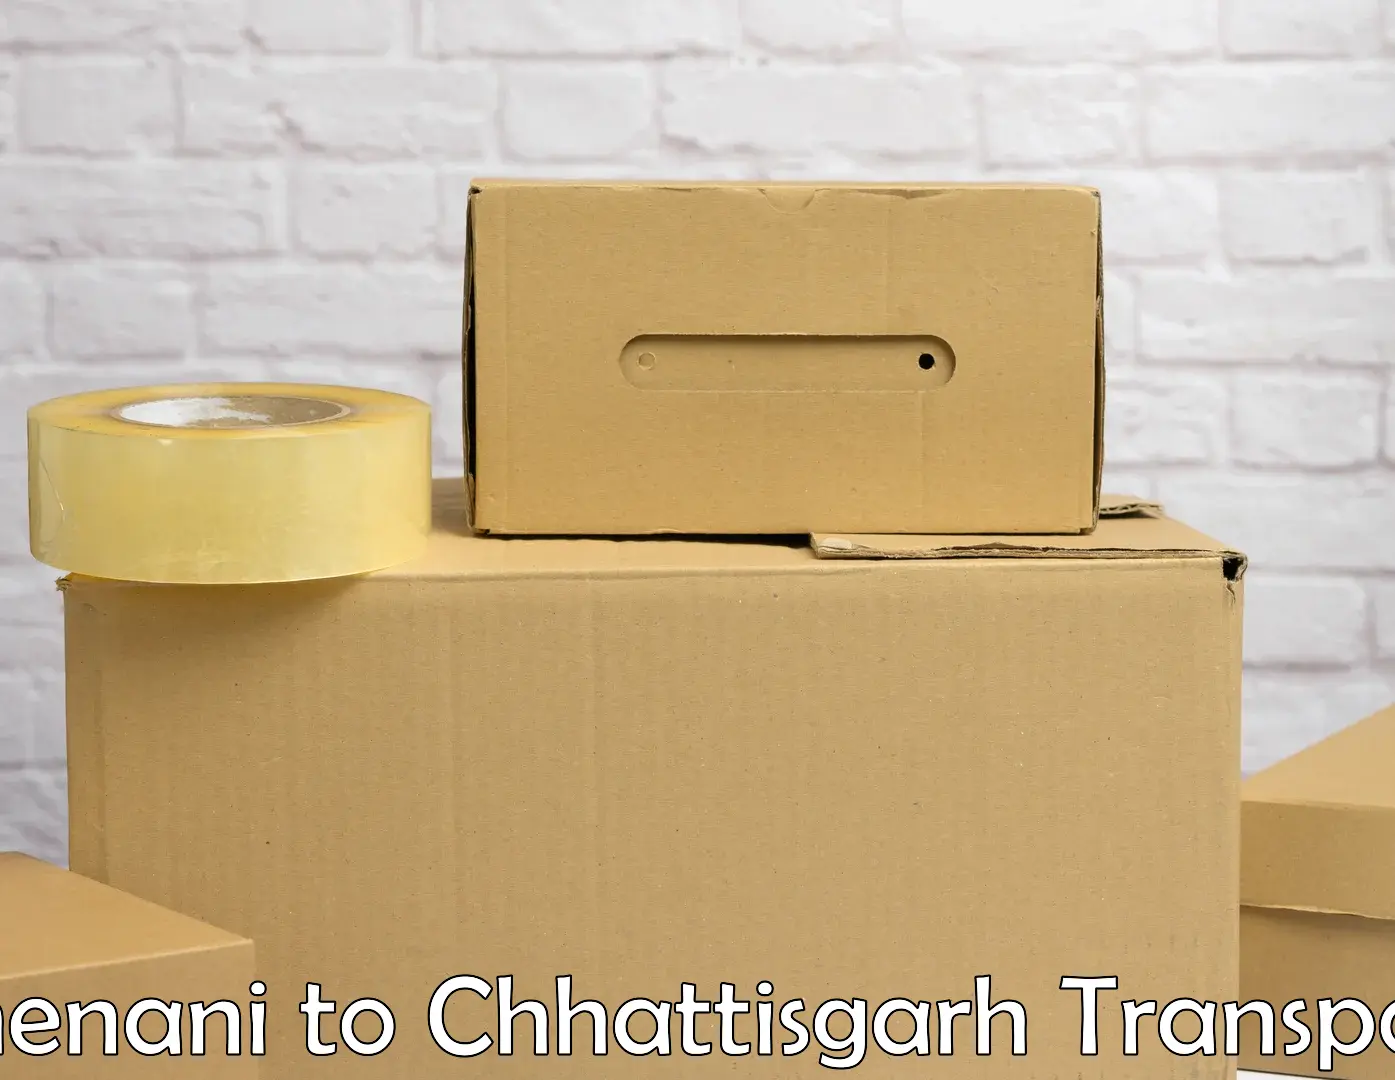 Container transport service Chenani to Patna Chhattisgarh